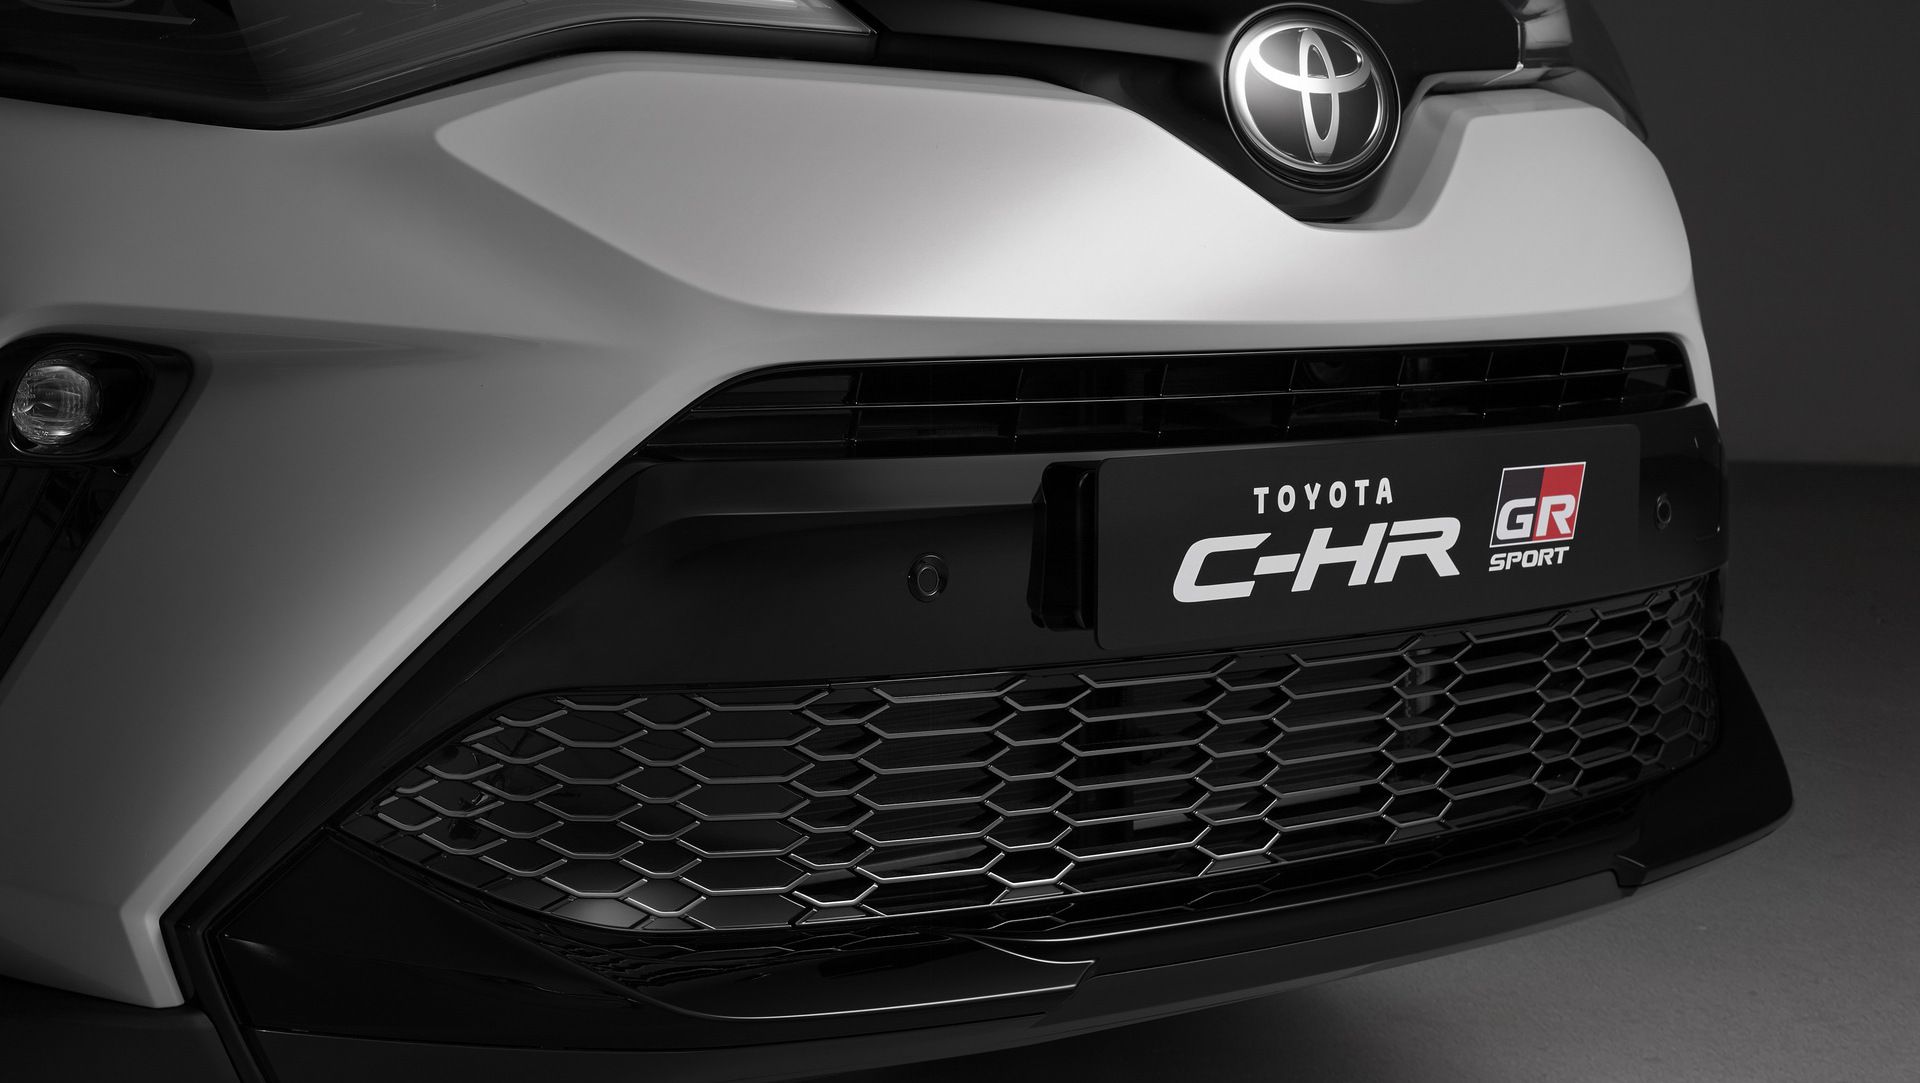 2021 Toyota C-HR Hybrid GR Sport Joins The Model's UK Range, Auto Moto